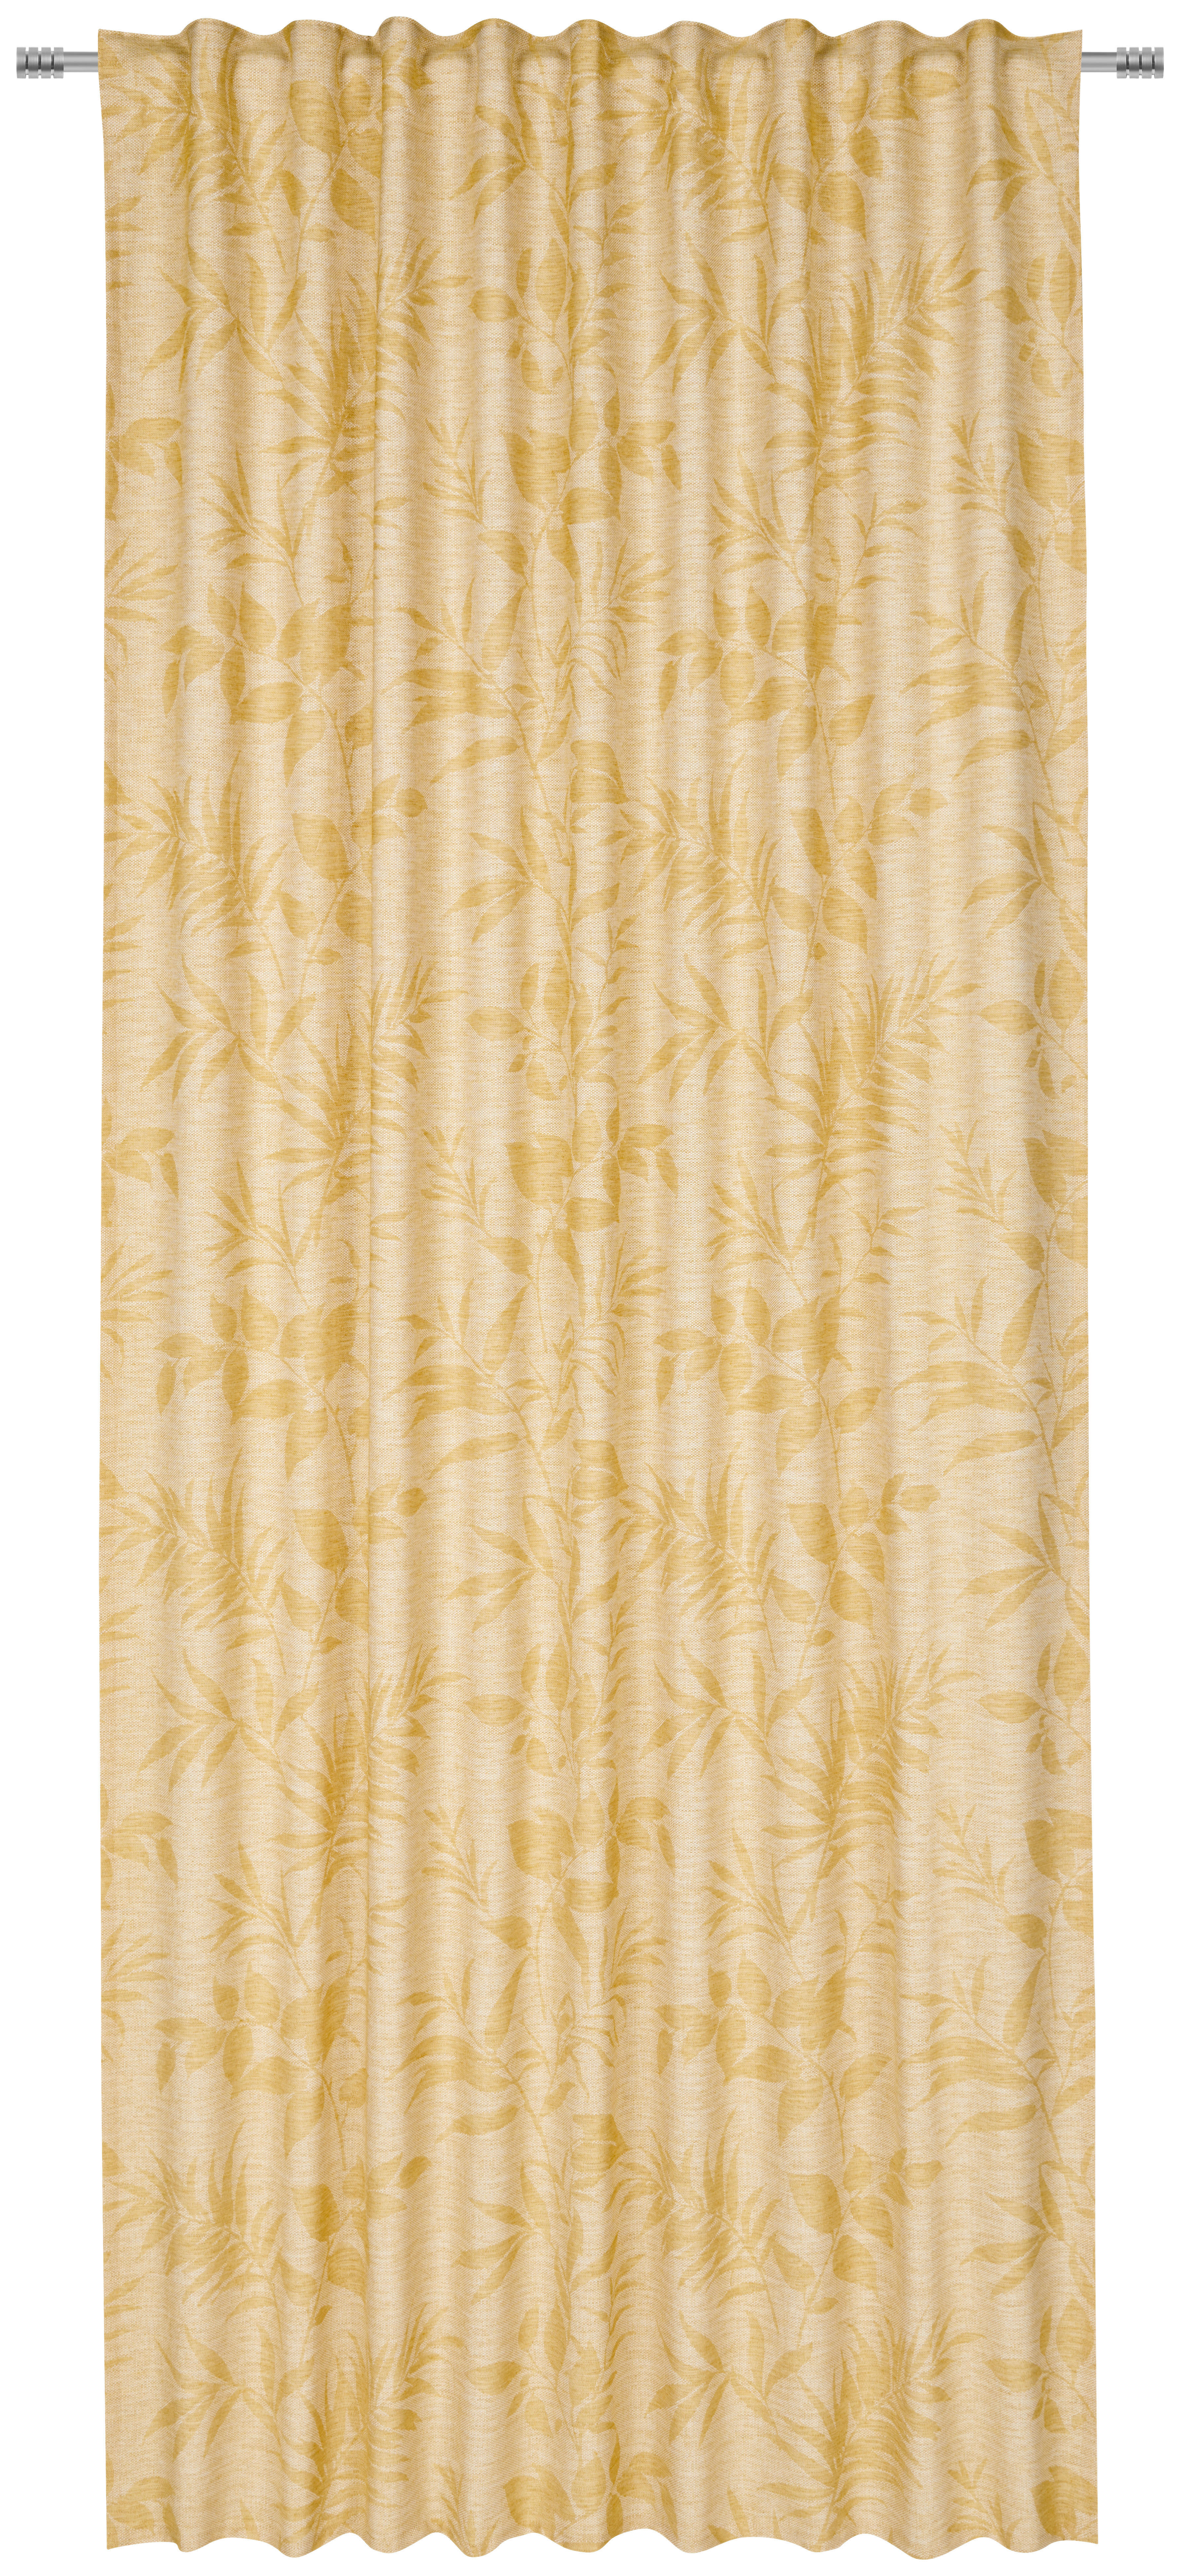 KÉSZFÜGGÖNY Részben fényzáró  - Sárga, Konventionell, Textil (140/245cm) - Esposa